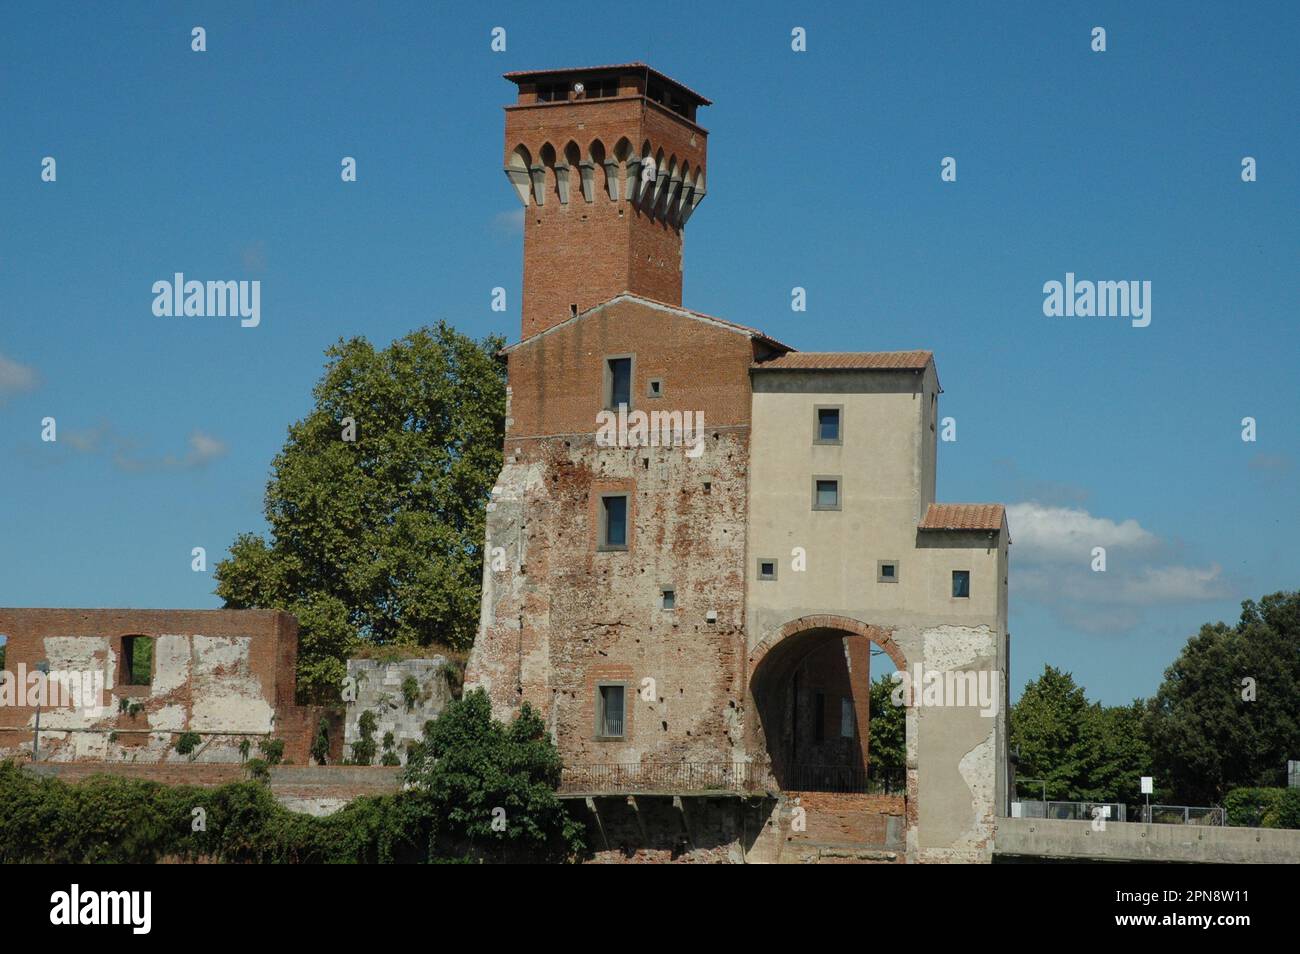 Porta di Accesso a Pisa con torre di guardia Stockfoto